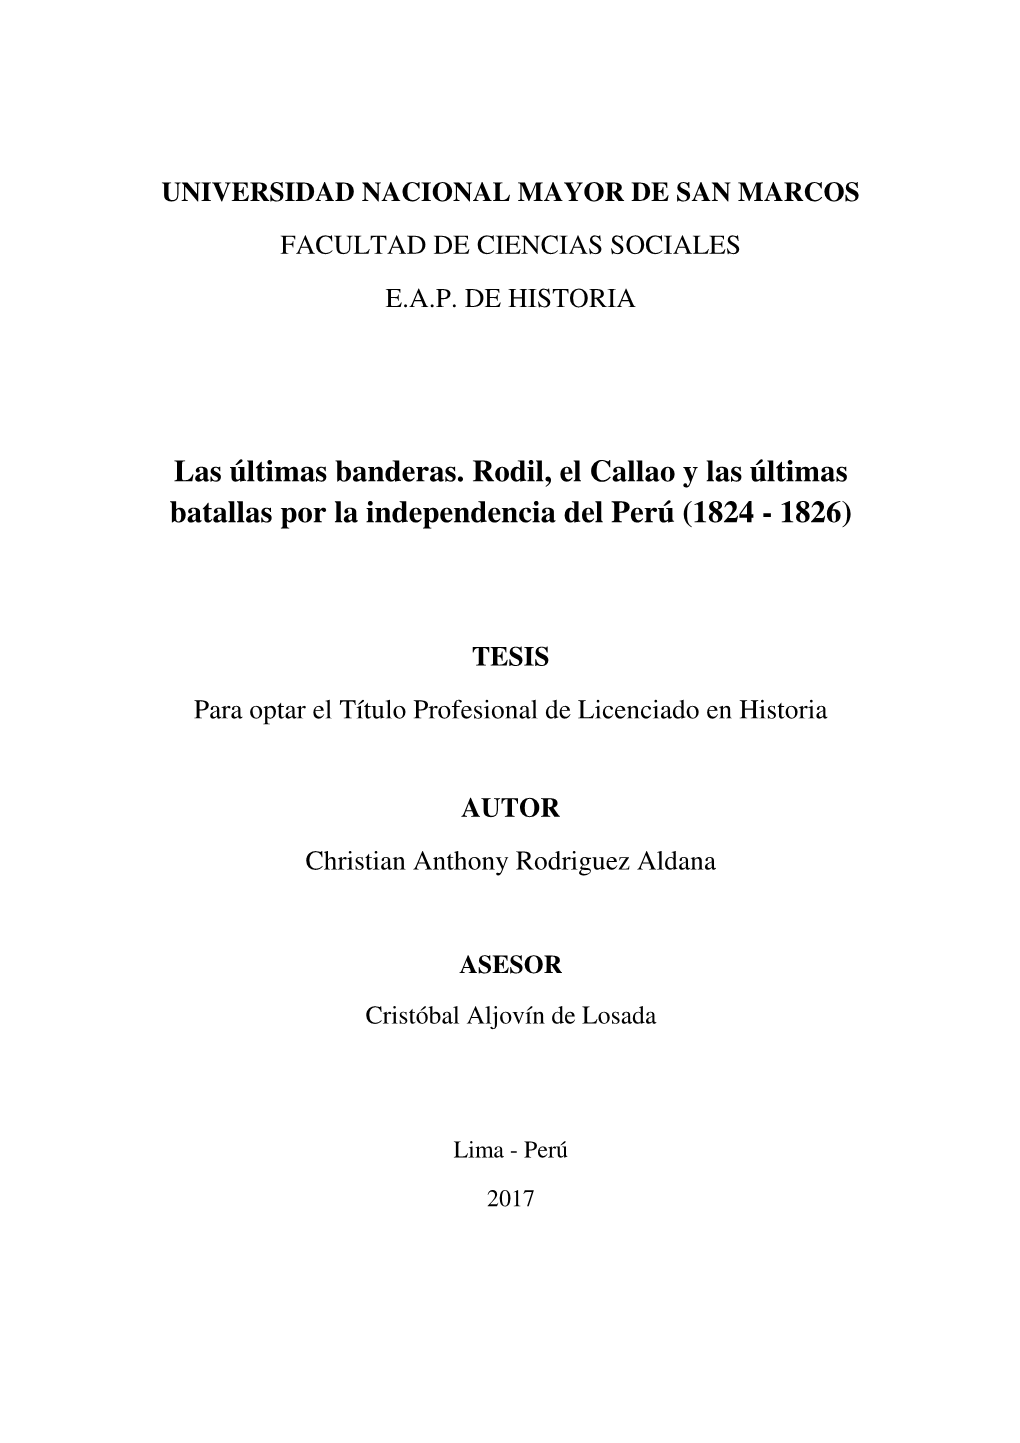 Las Últimas Banderas. Rodil, El Callao Y Las Últimas Batallas Por La Independencia Del Perú (1824 - 1826)